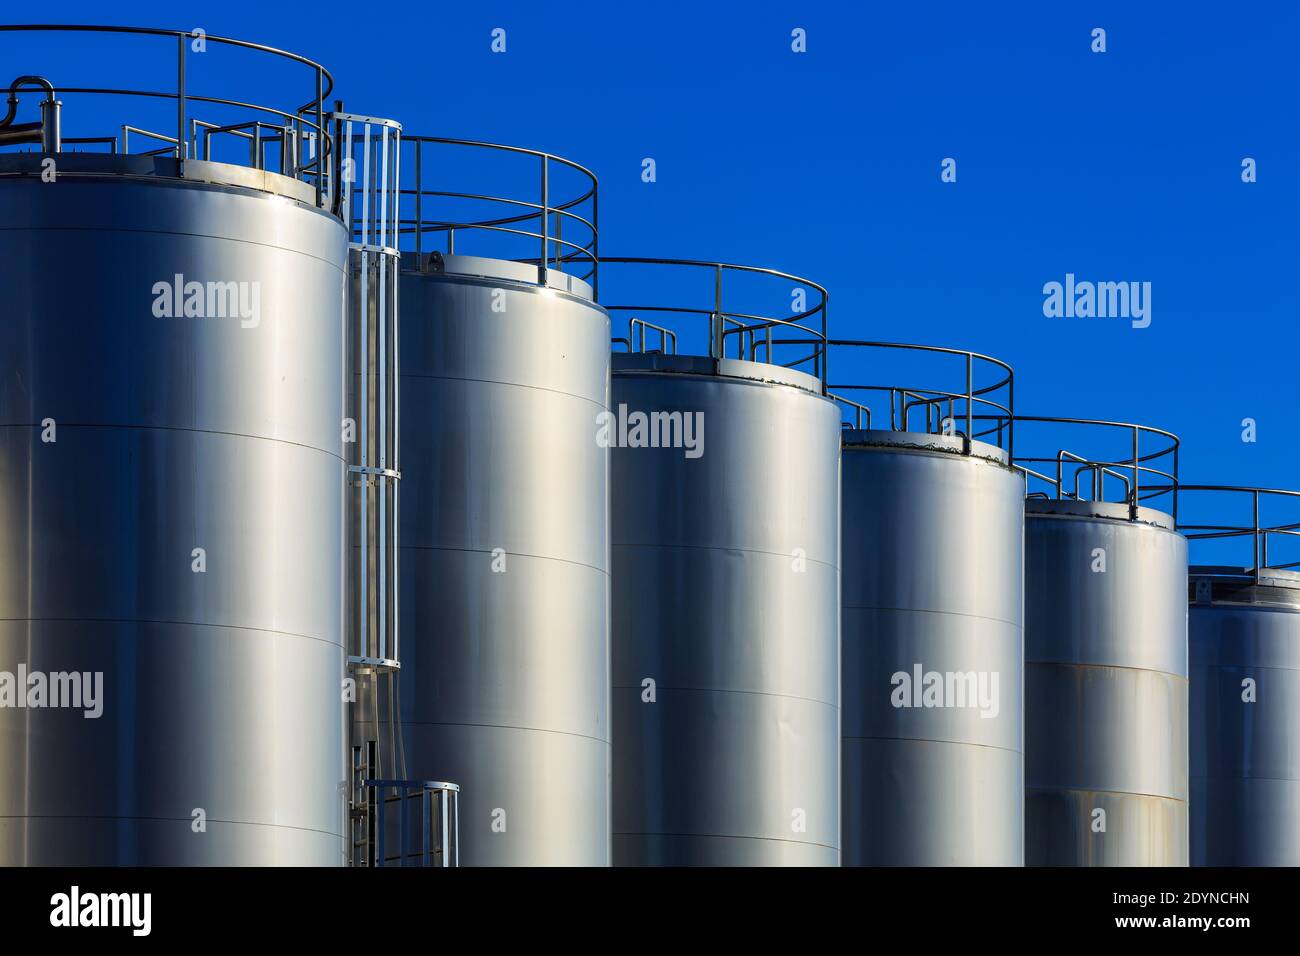 Une rangée de réservoirs de stockage géants en métal étincelant au soleil. Photographié dans une usine laitière Banque D'Images